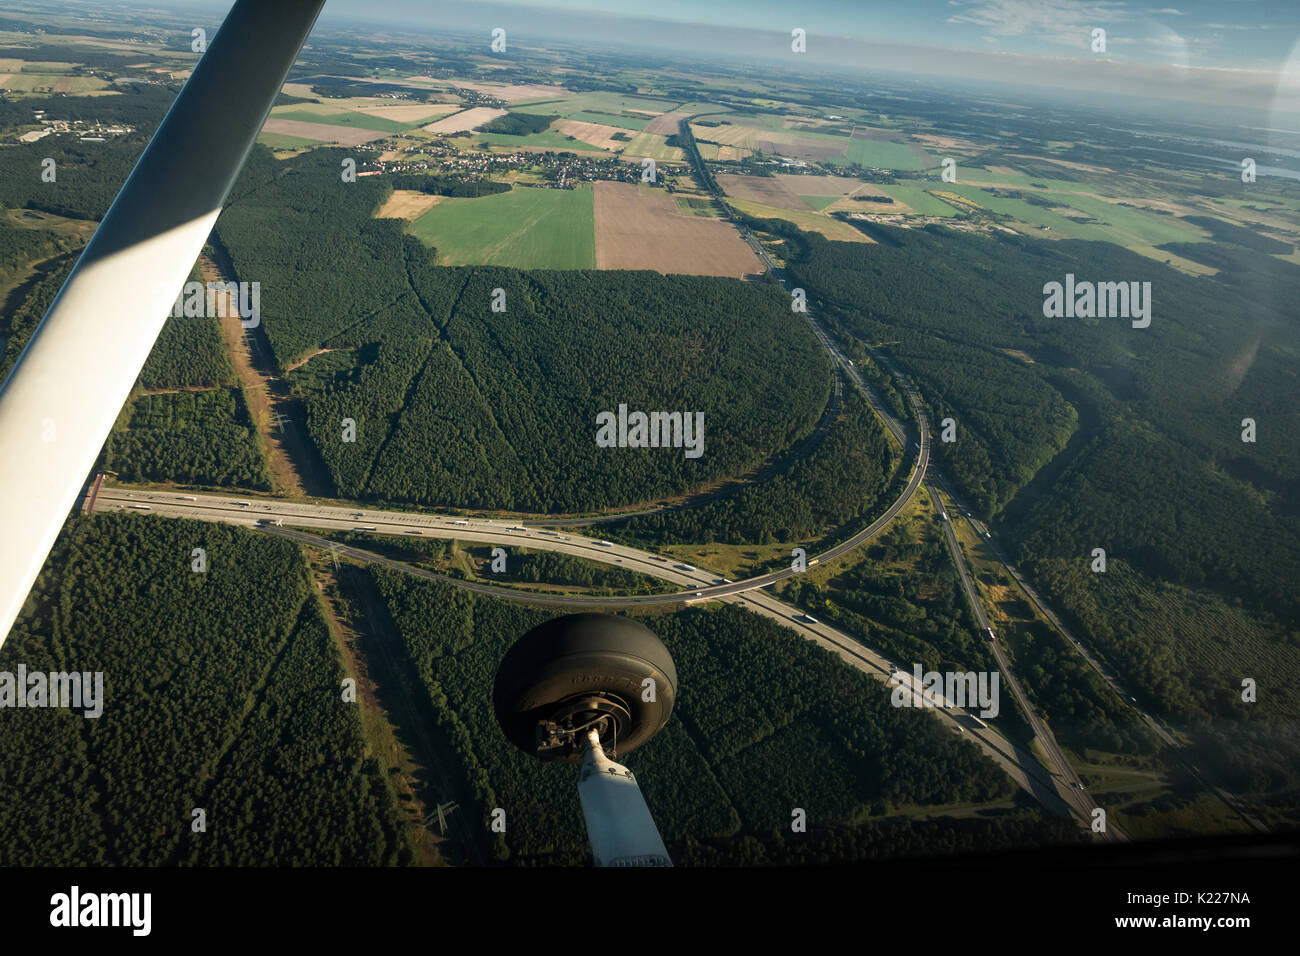 Photos prises d'air à partir d'un Cessna 172 à partir de la situation du trafic sur l'autoroute A2 près de Berlin. Banque D'Images